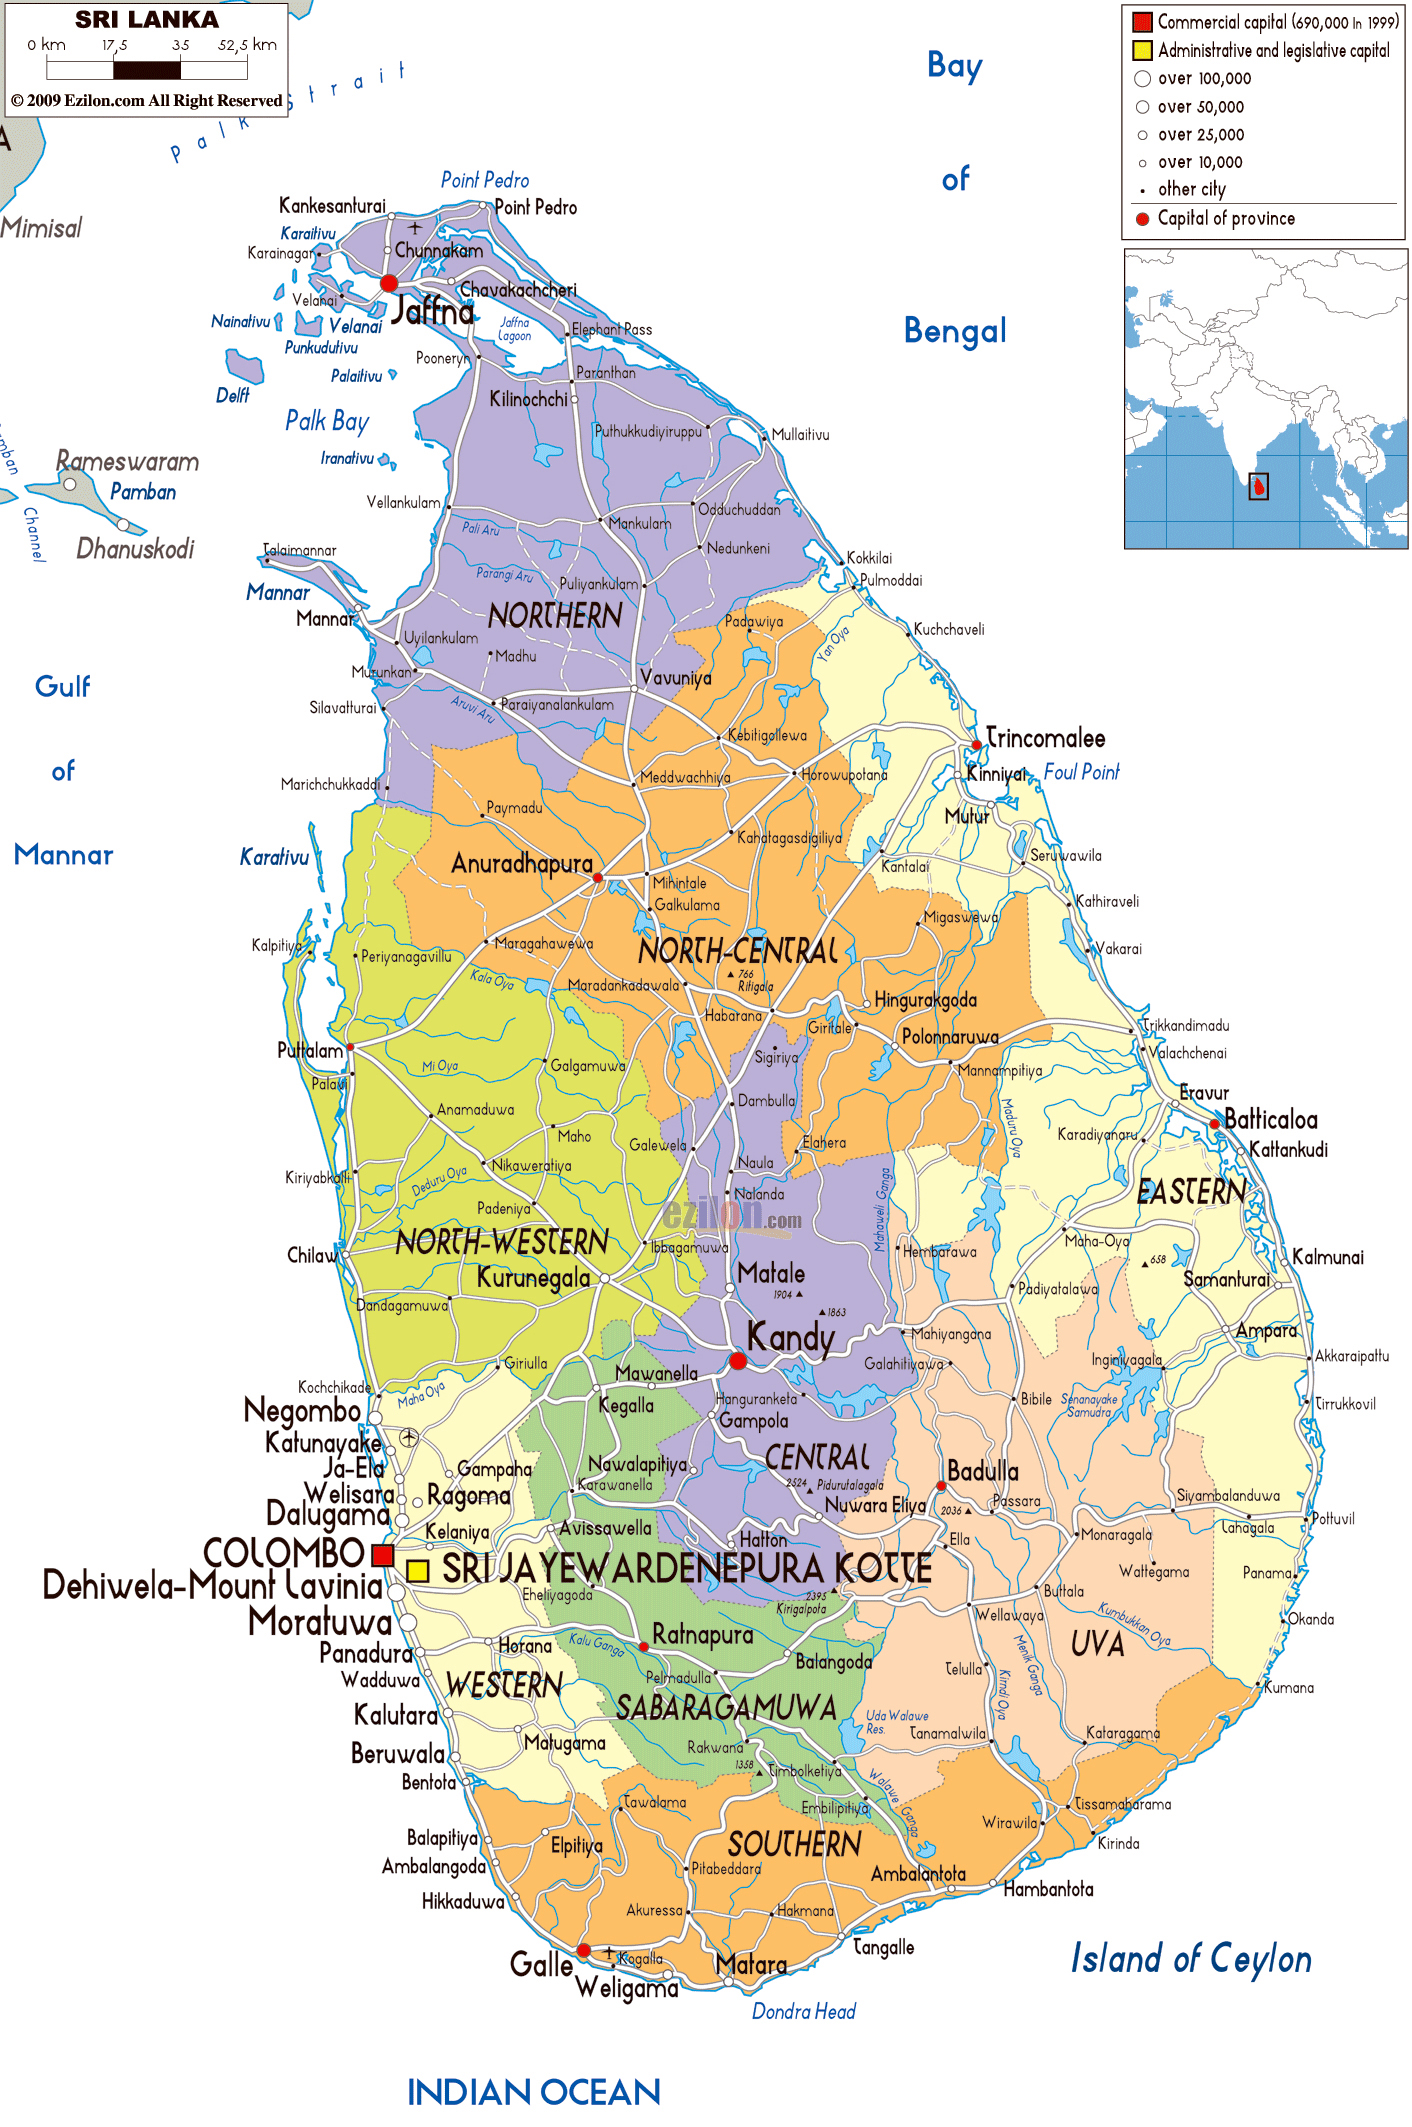 Grande mapa político y administrativo de Sri Lanka con carreteras